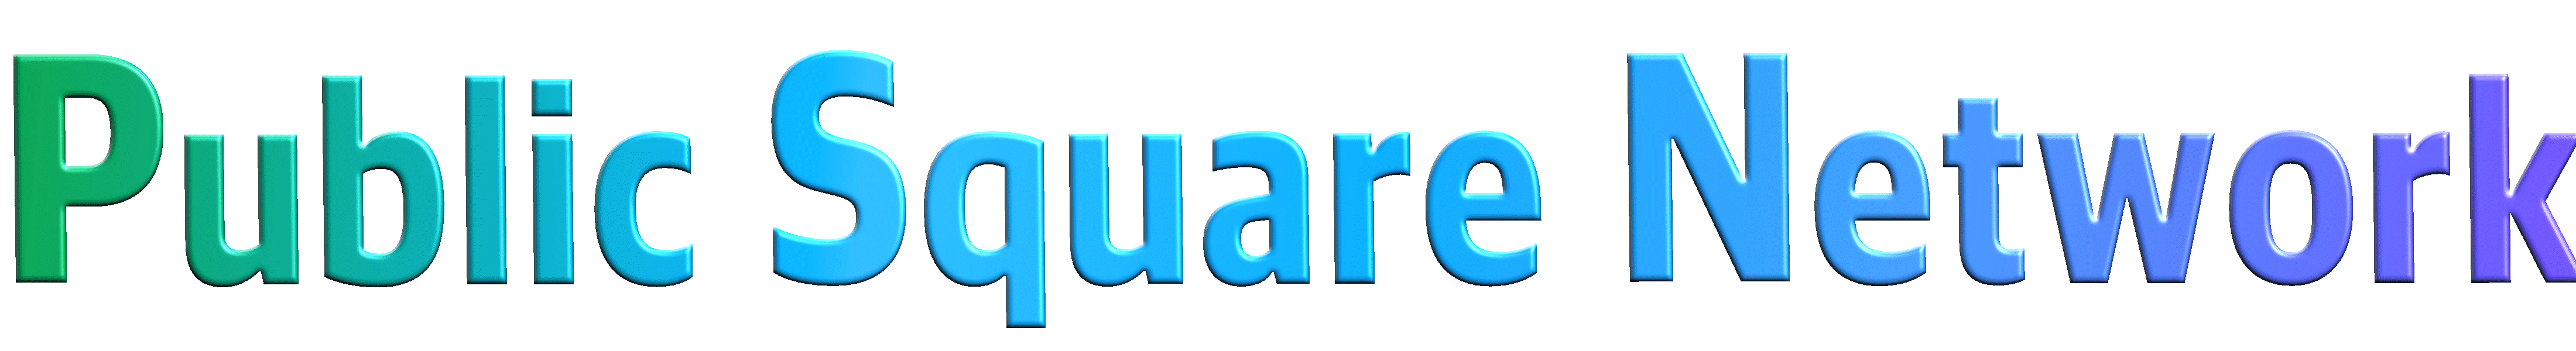 Public Square Network